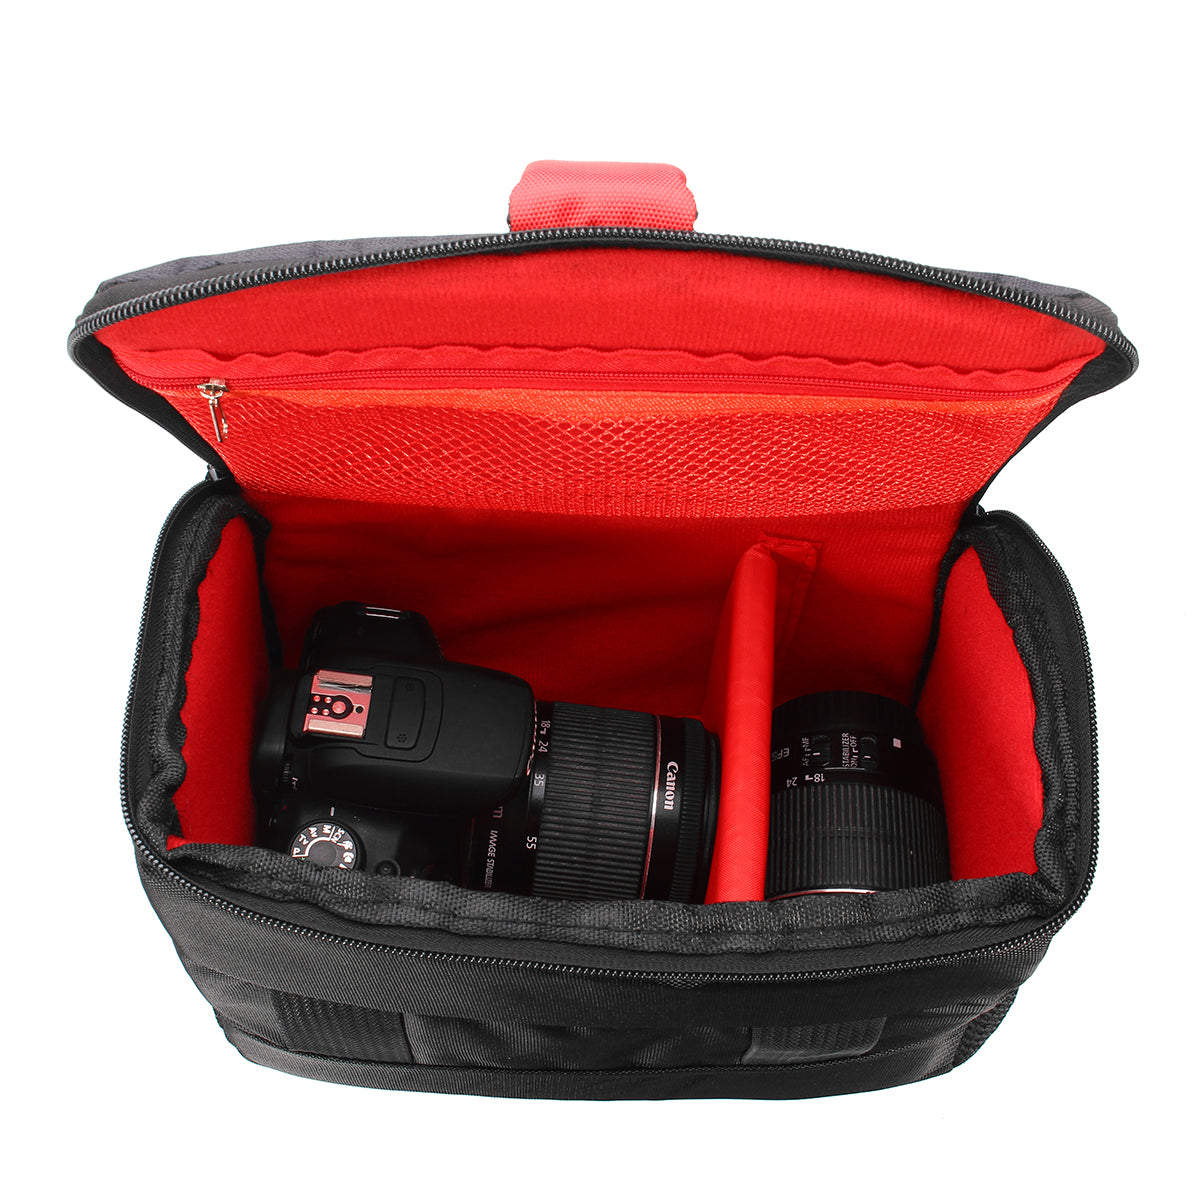 Universal Portable Shoulder Bag Digital Camera Case Bag for Canon for Nikon for Sony DSLR Cameras